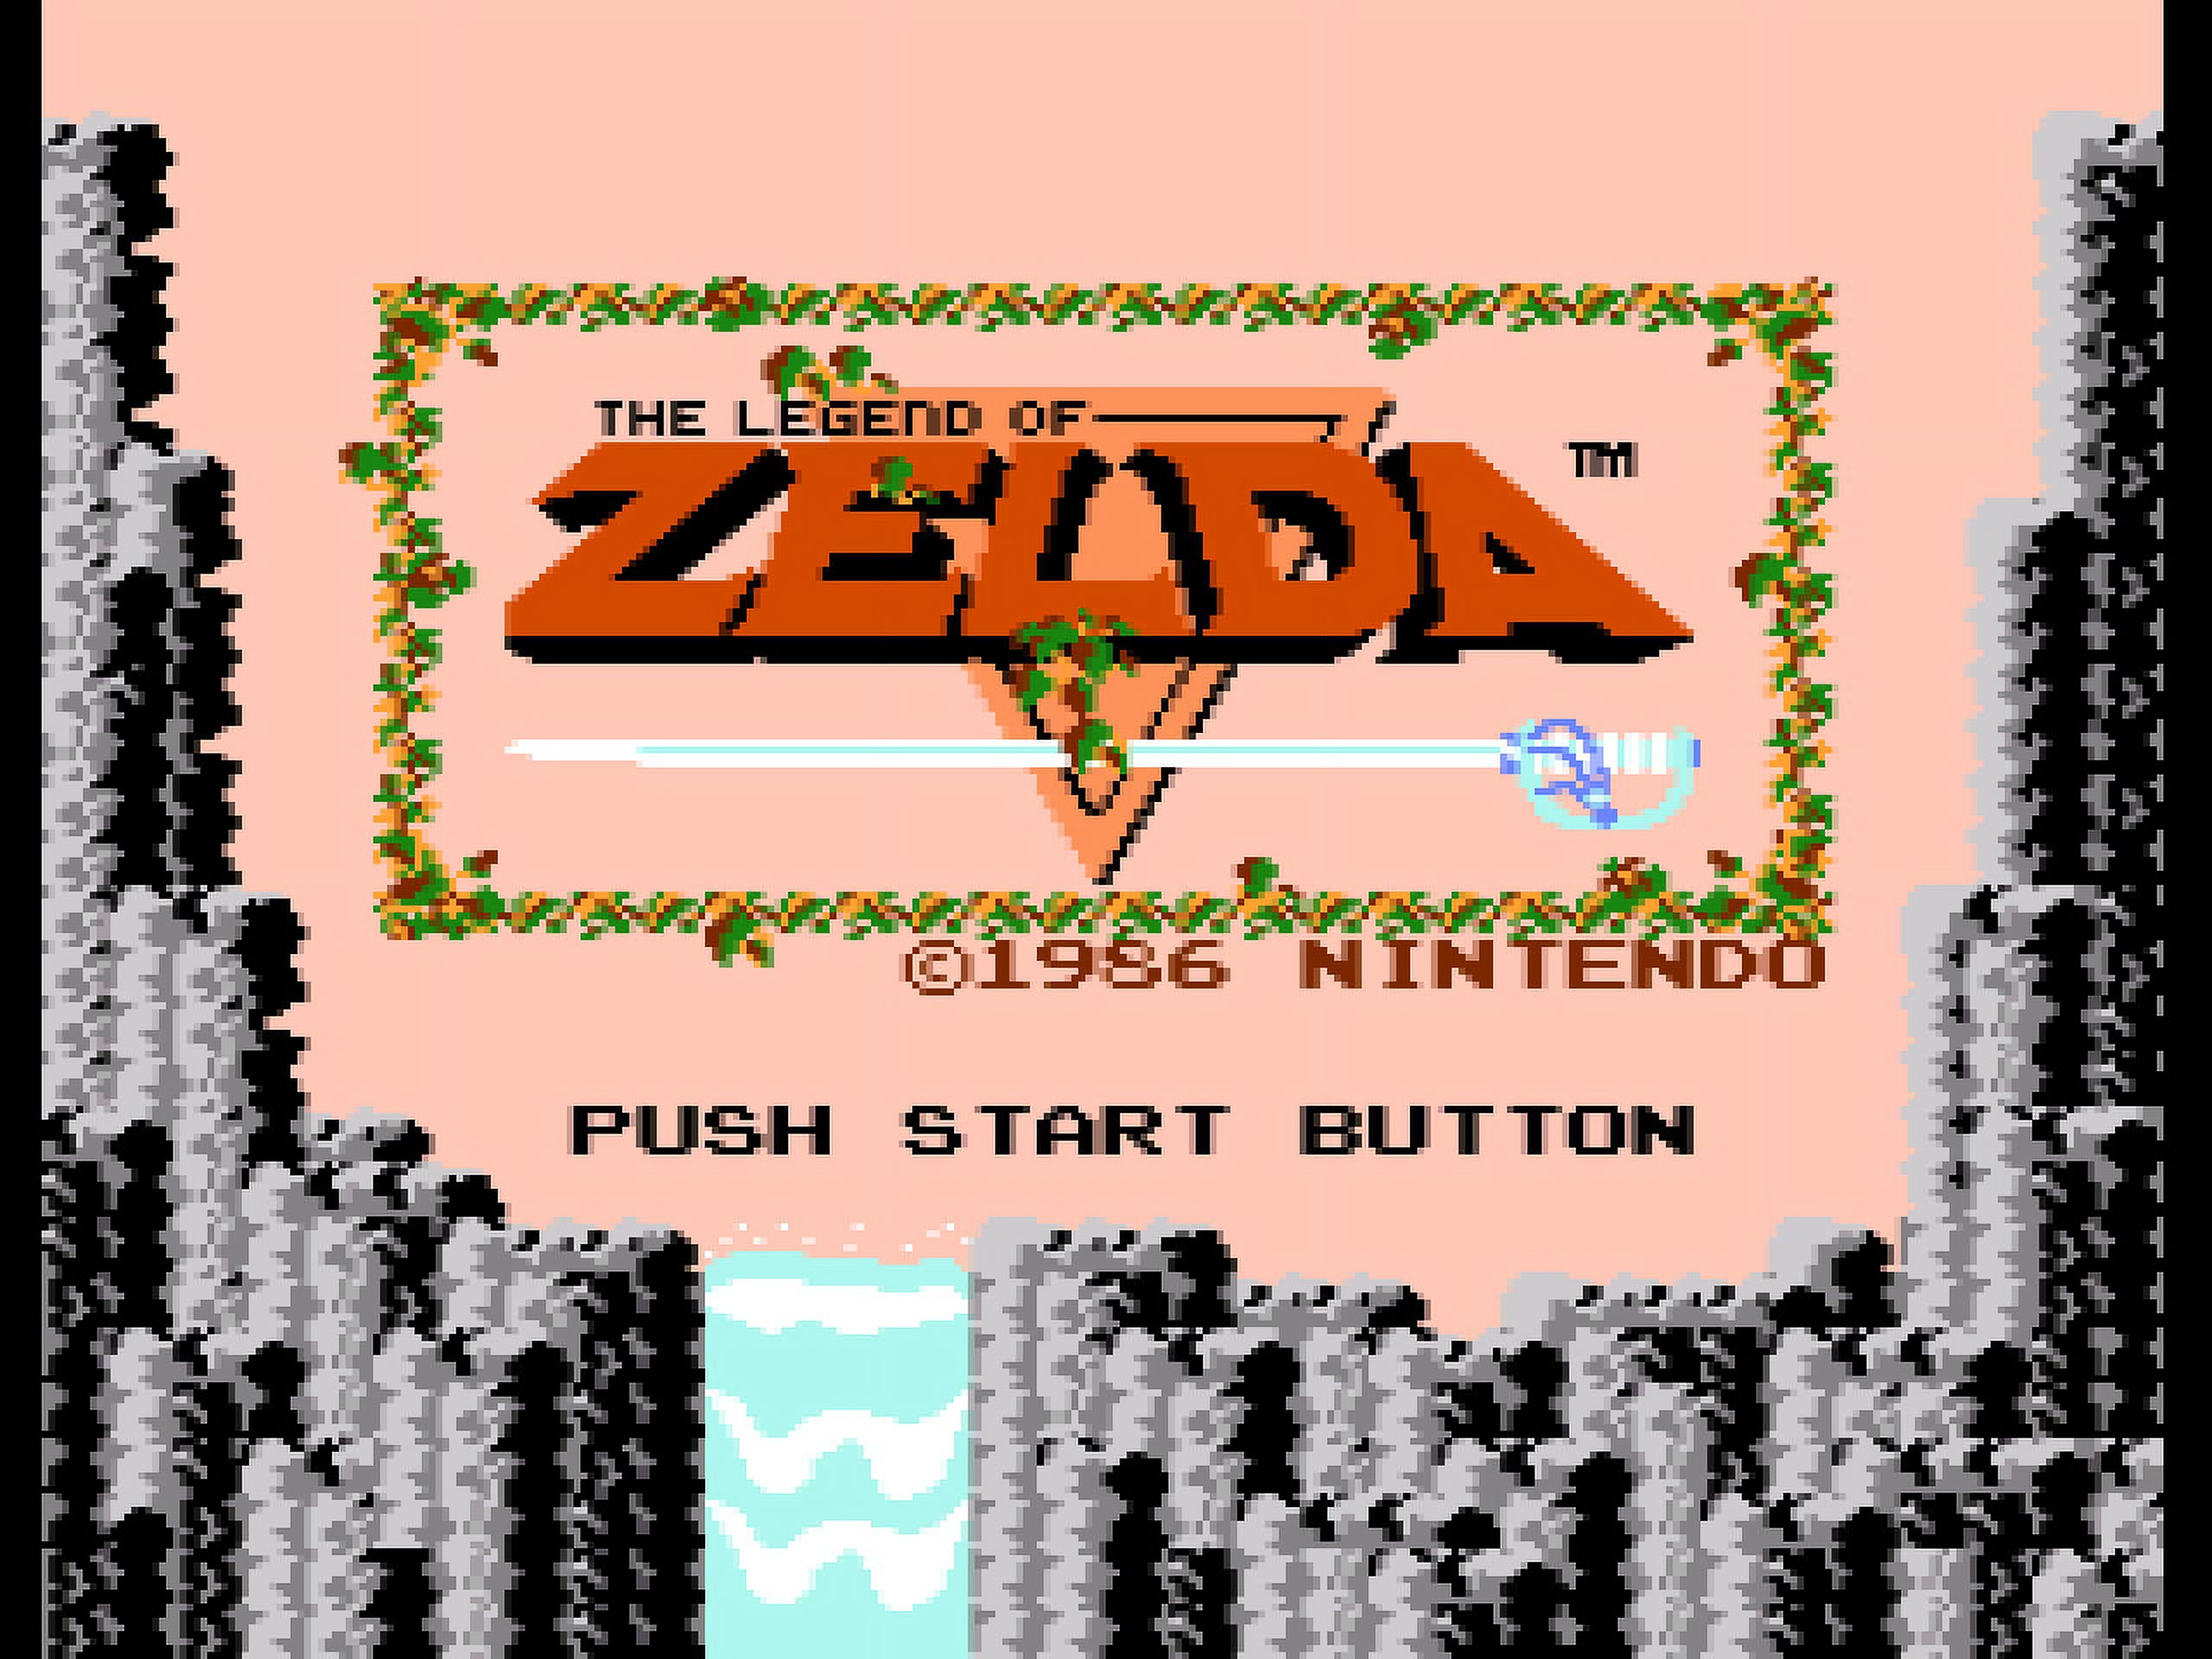 Game & Watch: The Legend of Zelda?, Nintendo NES Classic - image 5 of 18